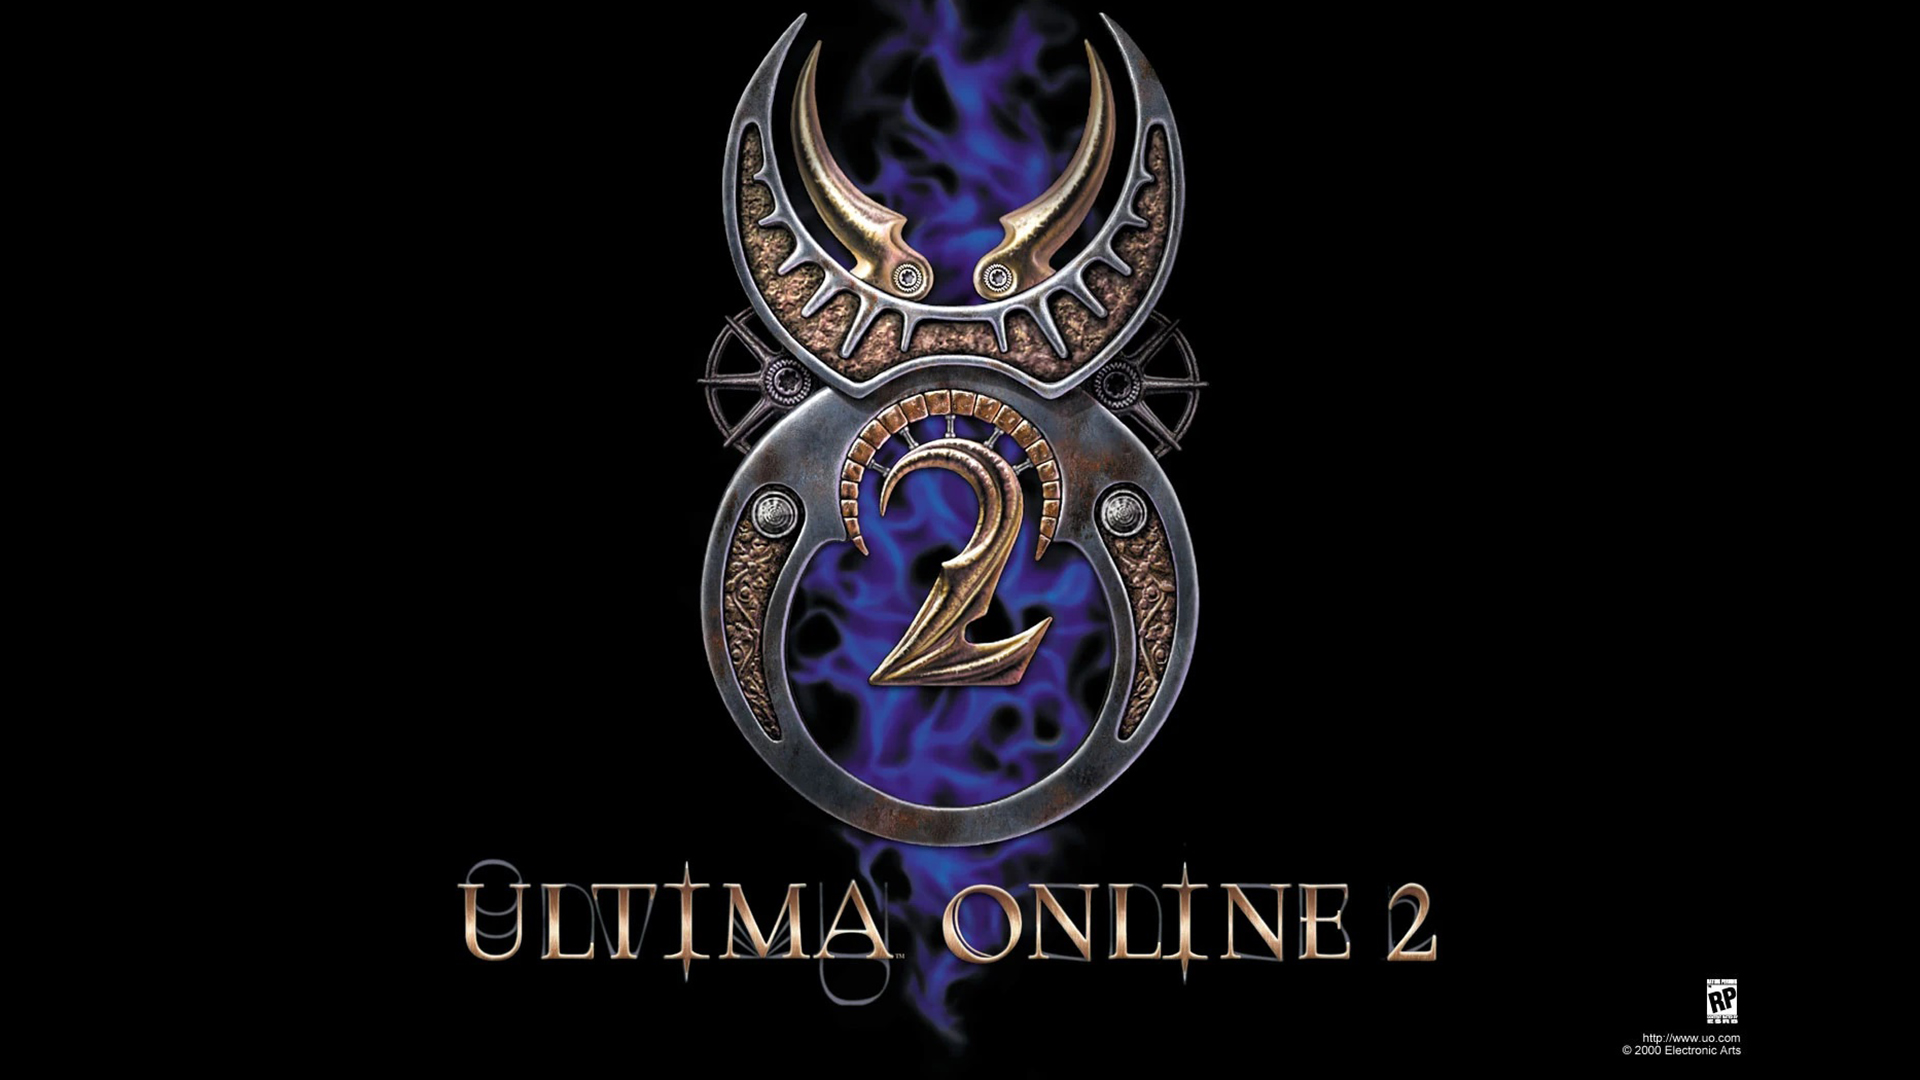 Richard „Lord British” Garriott stworzyłby Ultima Online 2, ale…